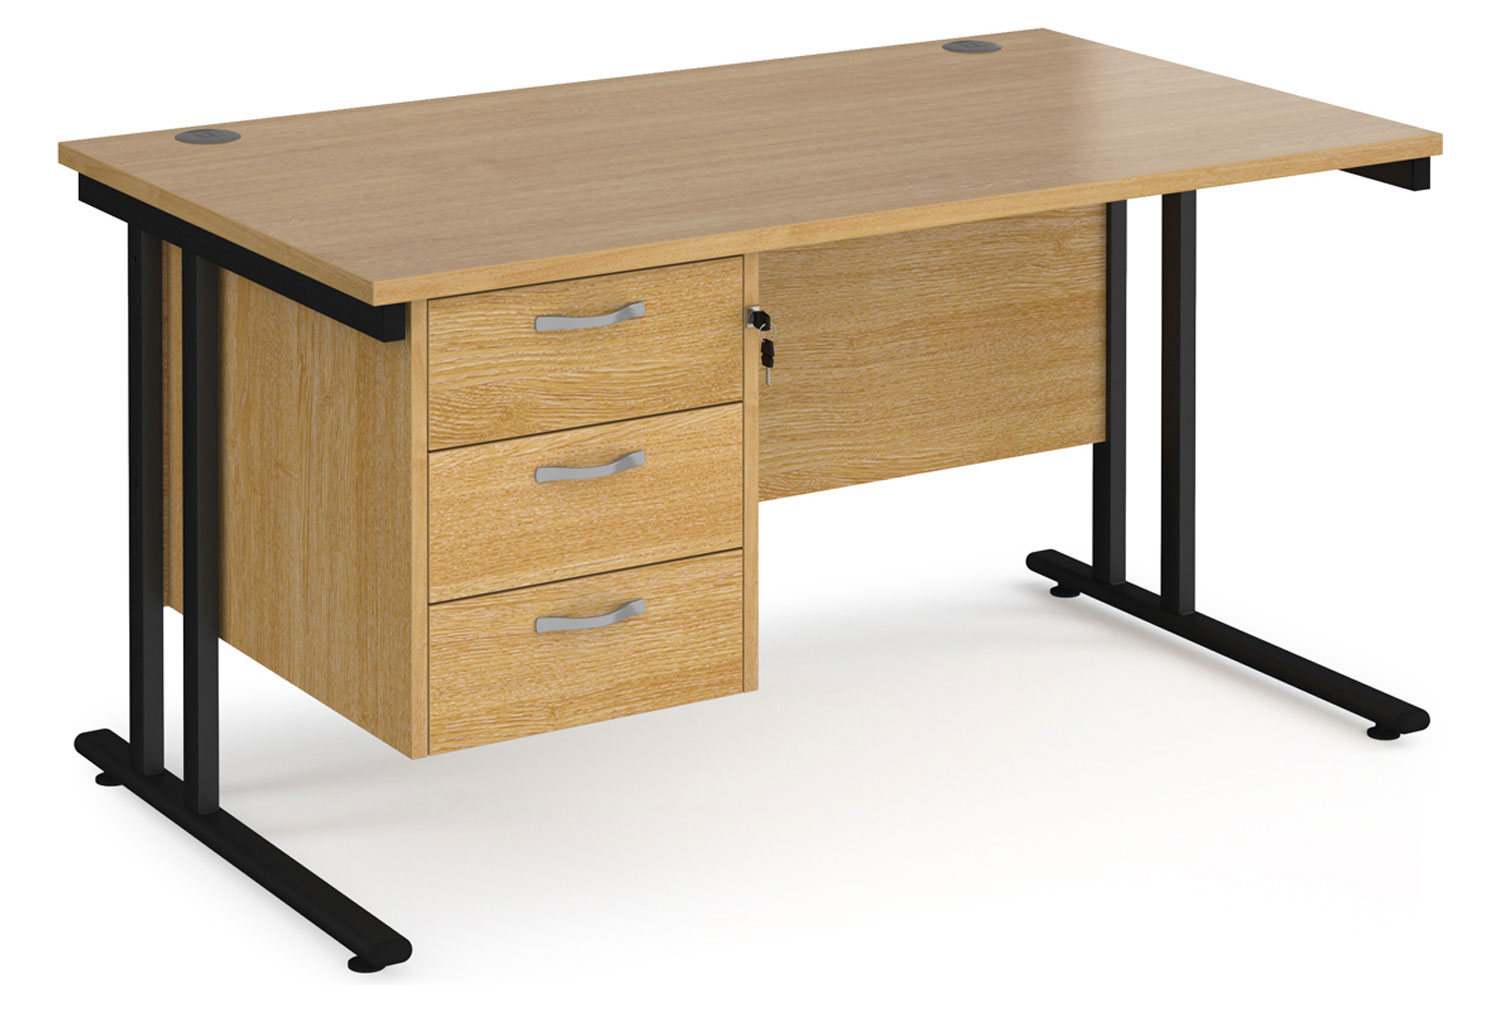 Value Line Deluxe C-Leg Rectangular Office Desk 3 Drawers (Black Legs), 140wx80dx73h (cm), Oak